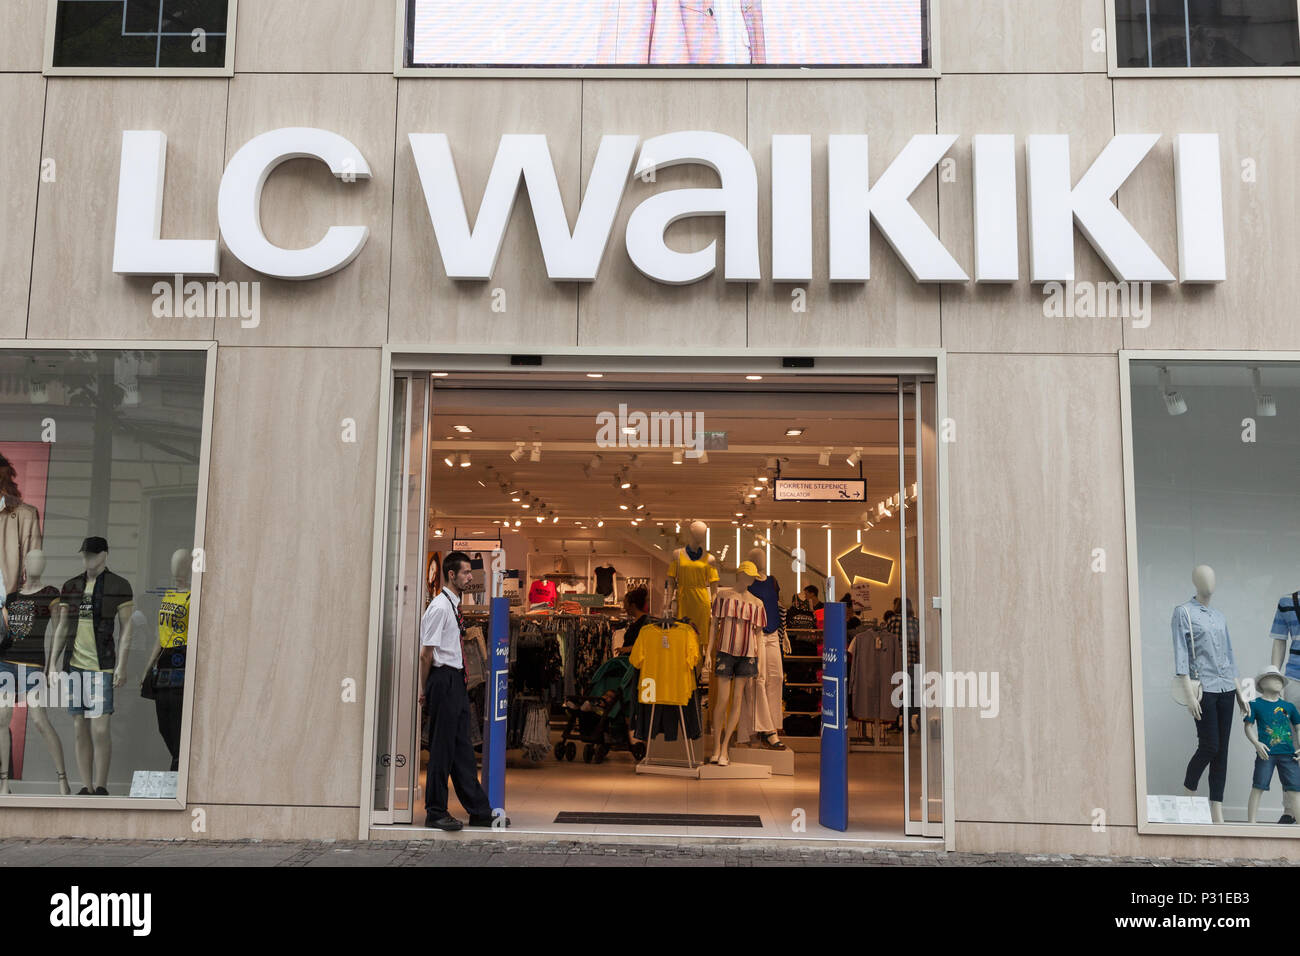 Belgrado, Serbia - Junio 14, 2018: el logotipo de la tienda principal de LC  en Belgrado. LC Waikiki es una marca de moda de ropa, originately francés,  que ahora pertenecen a Fotografía